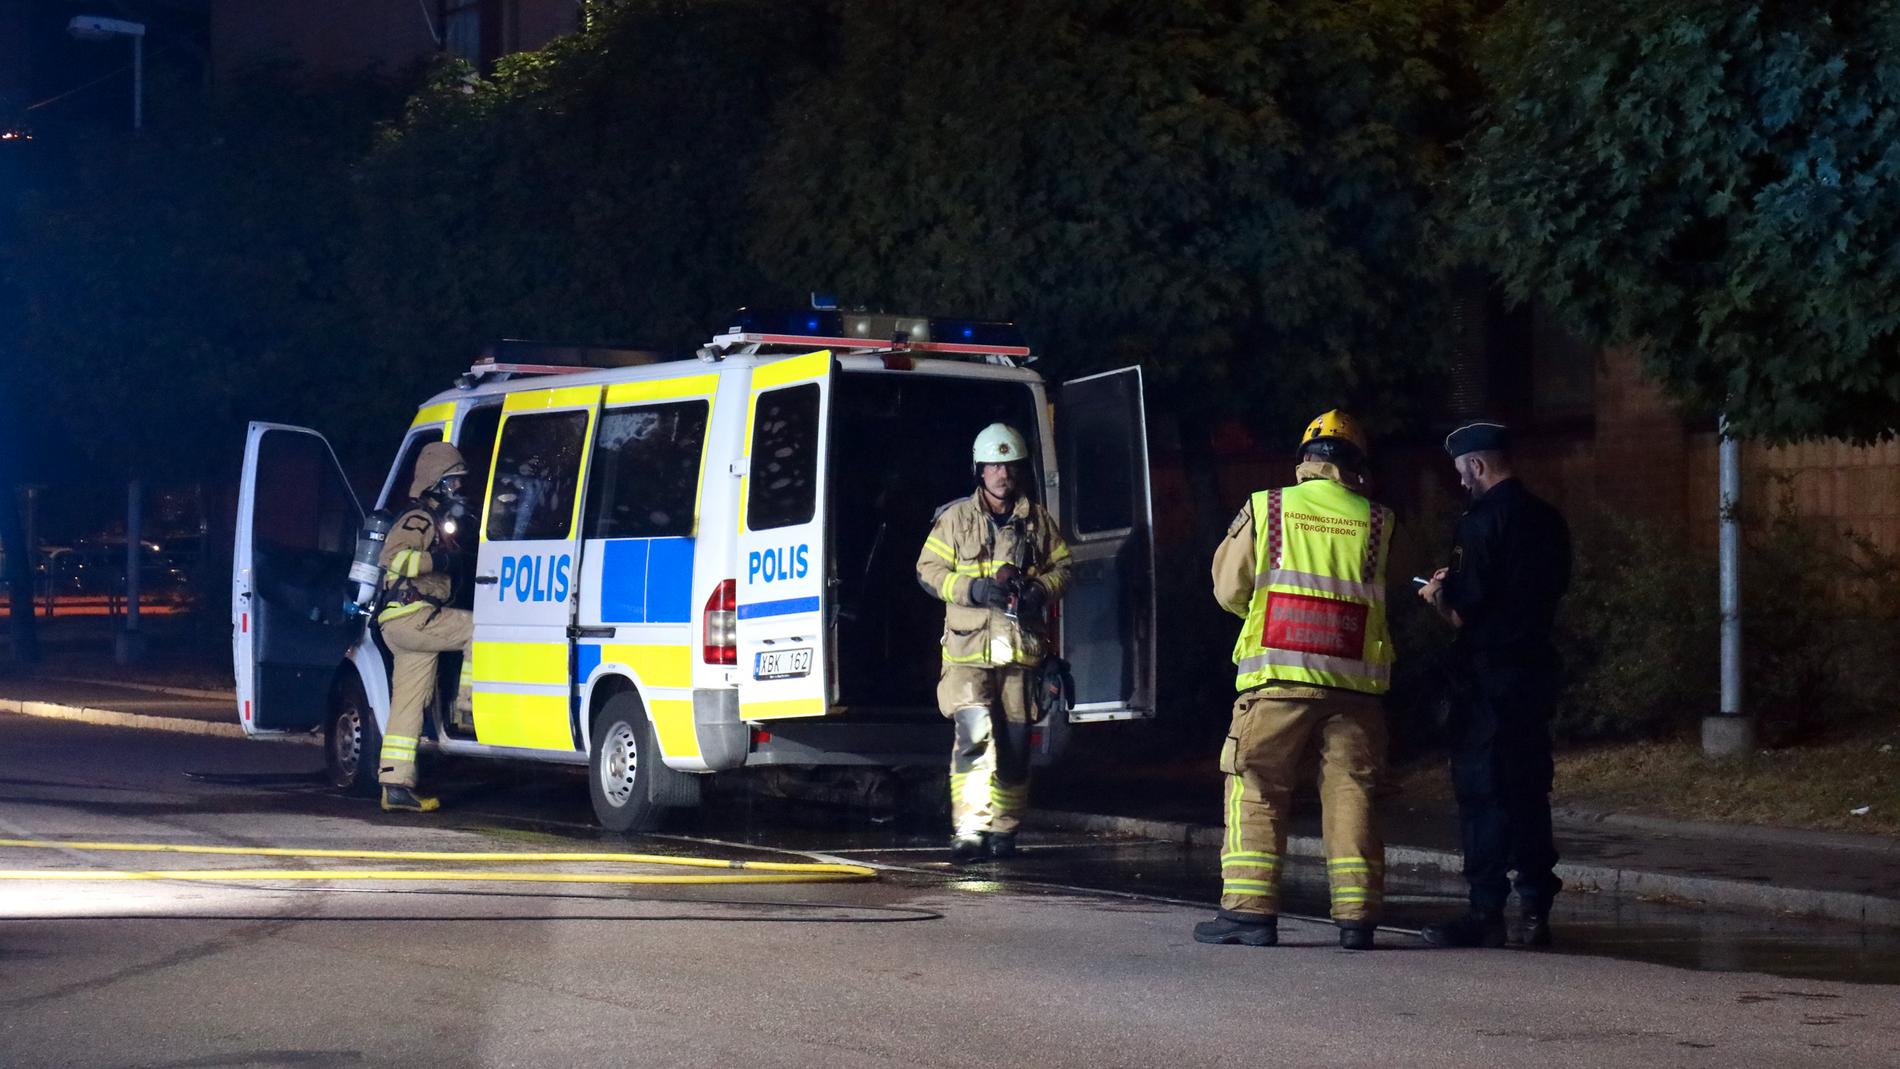 Polisbuss sattes i brand i natt vid polisstationen på Hisingen. 